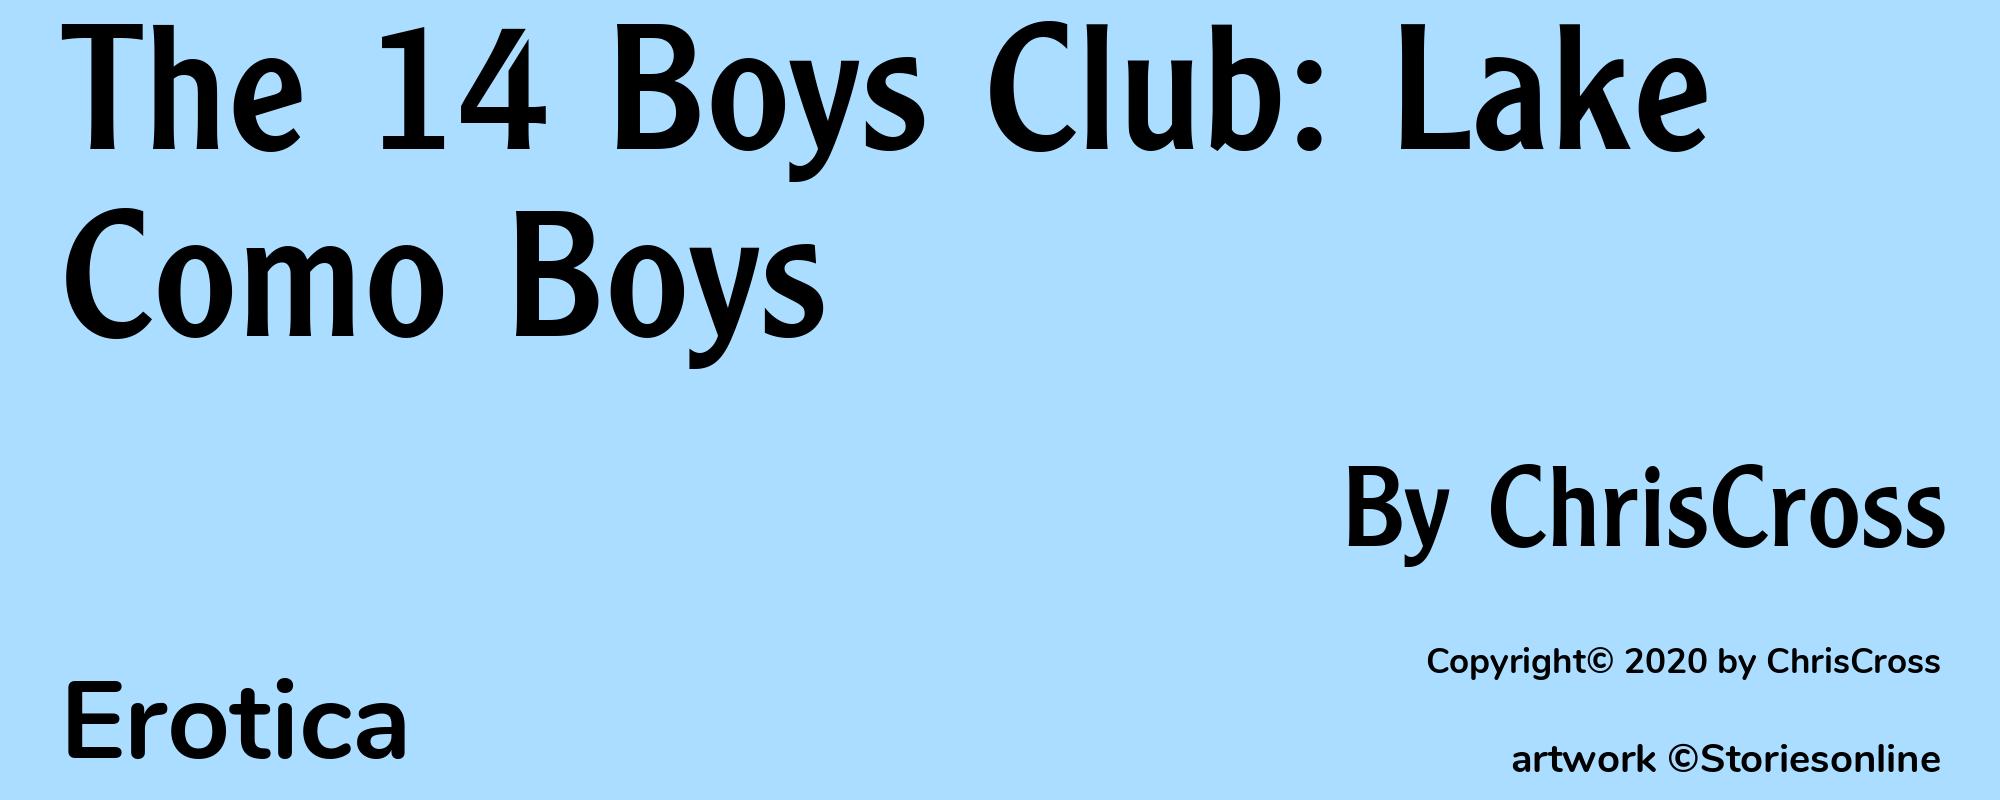 The 14 Boys Club: Lake Como Boys - Cover